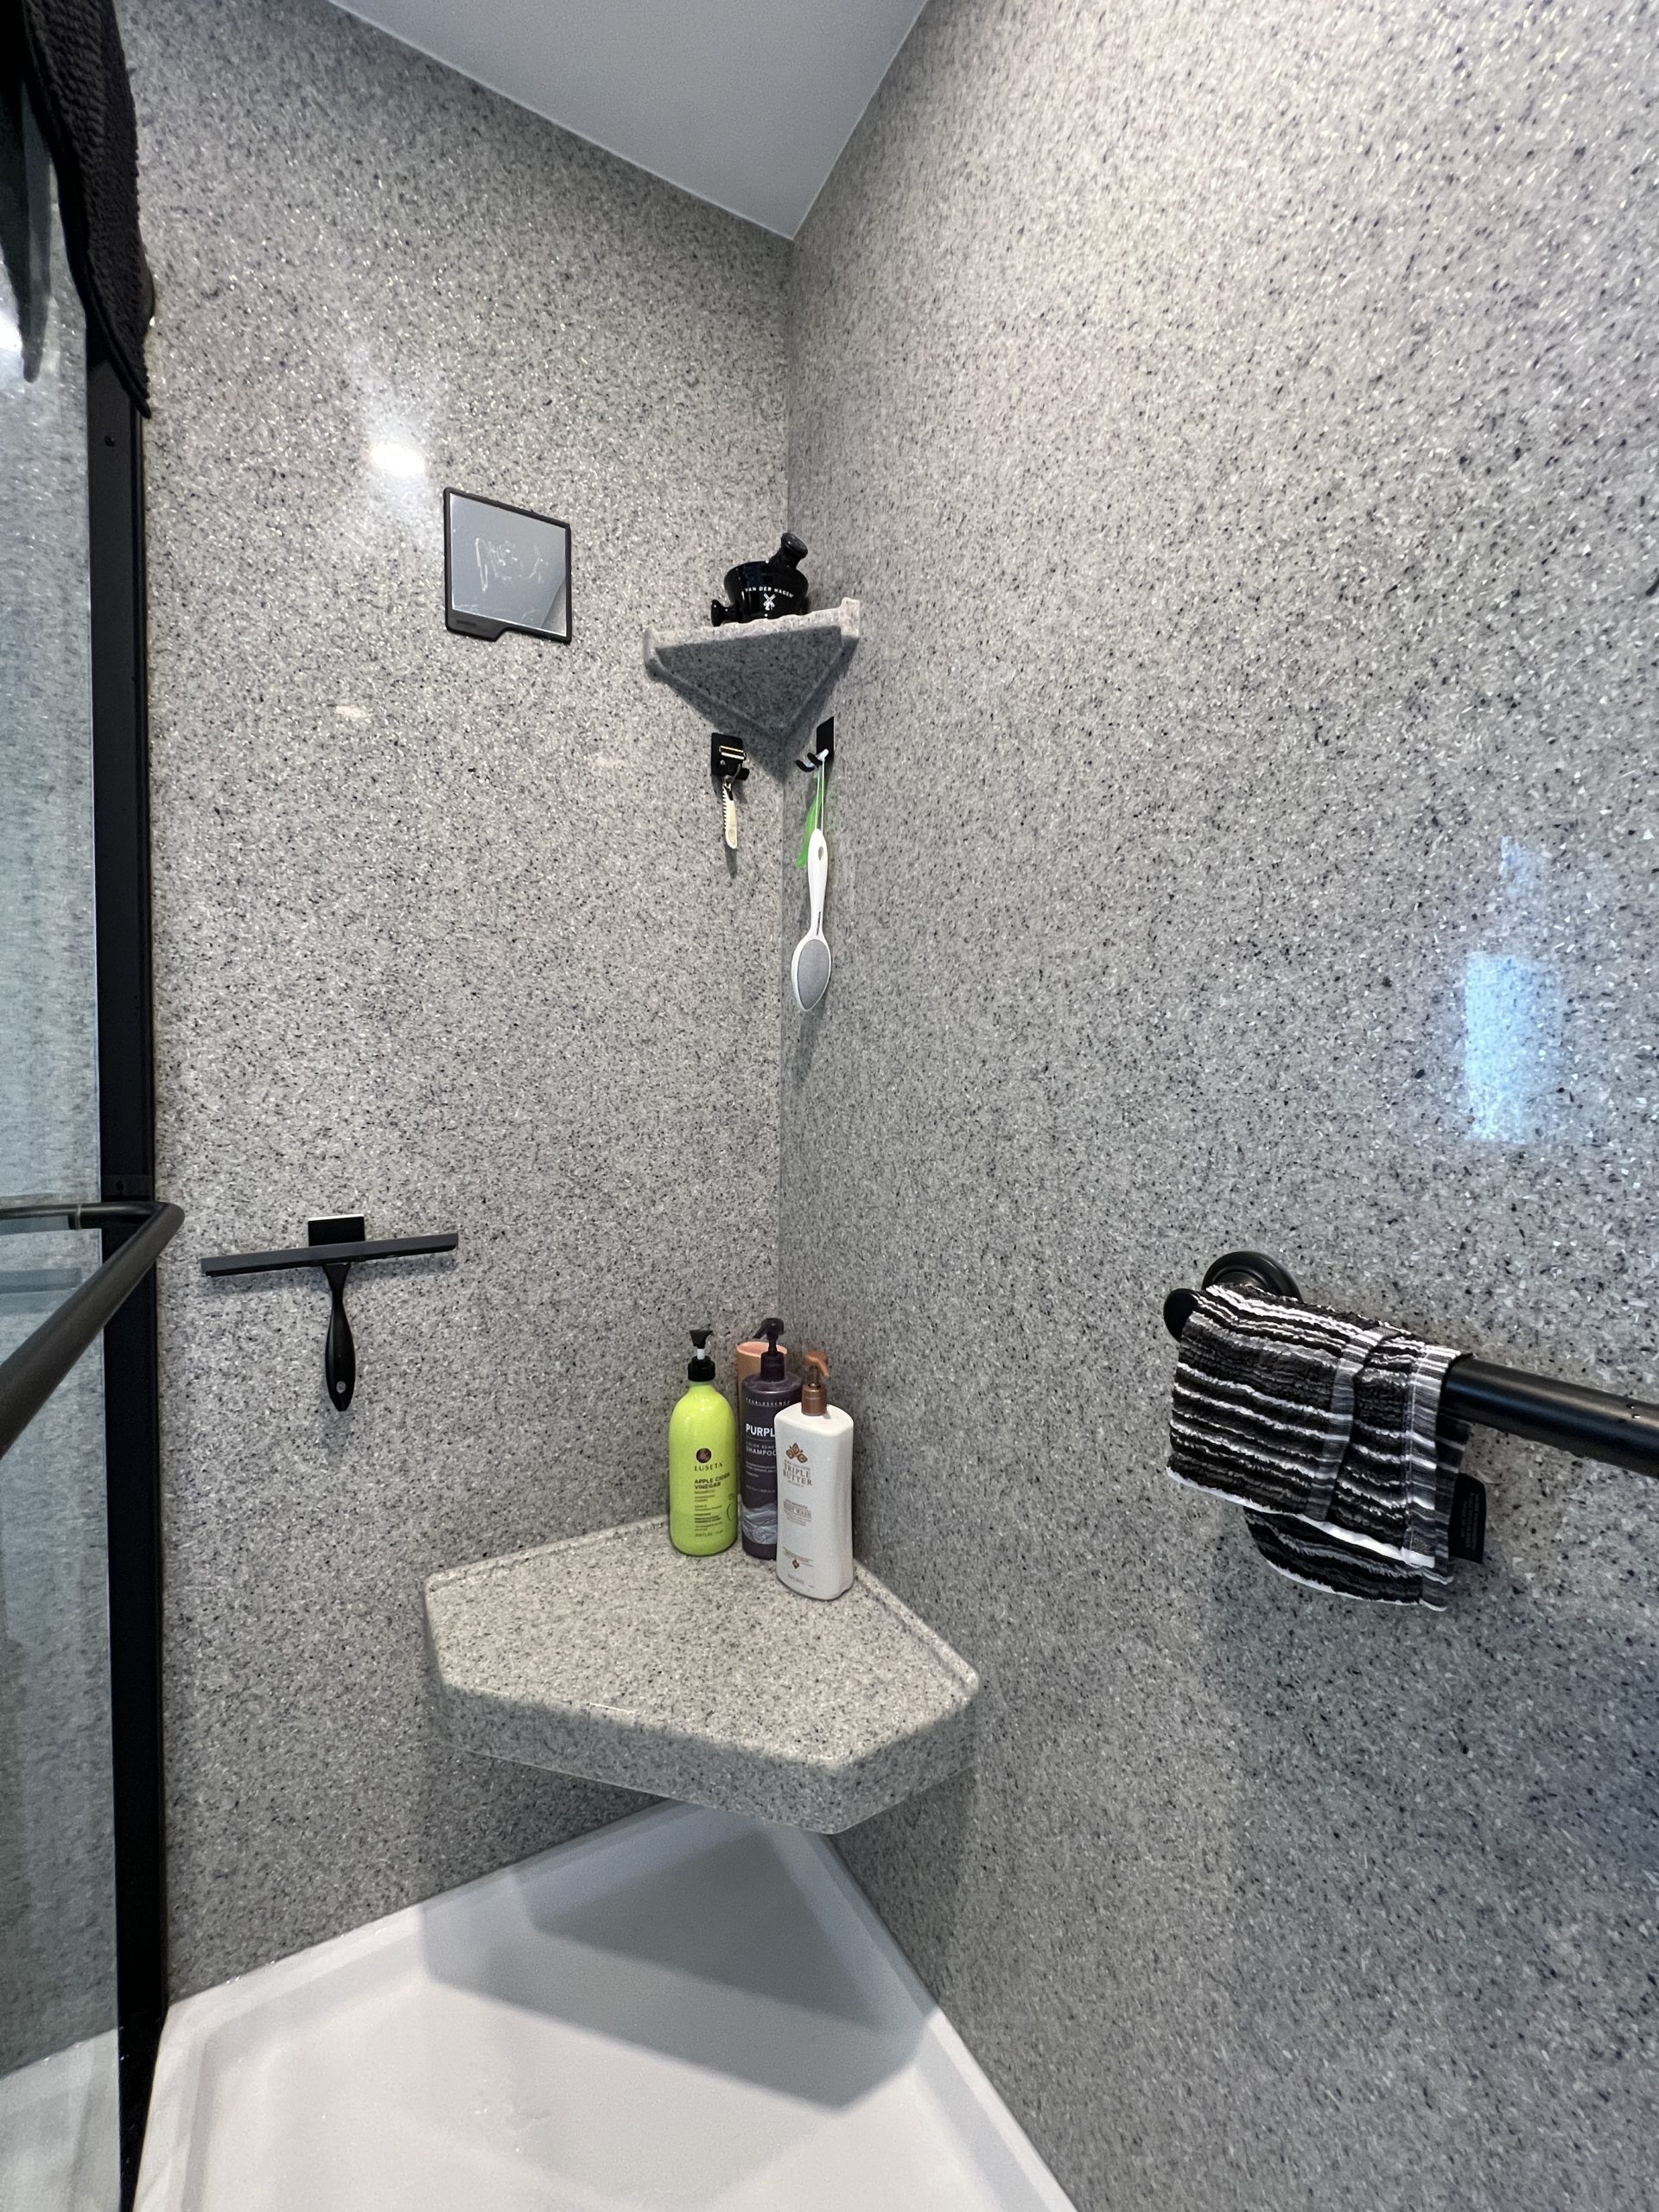  |  Black Frame Bathroom Shower Shelves